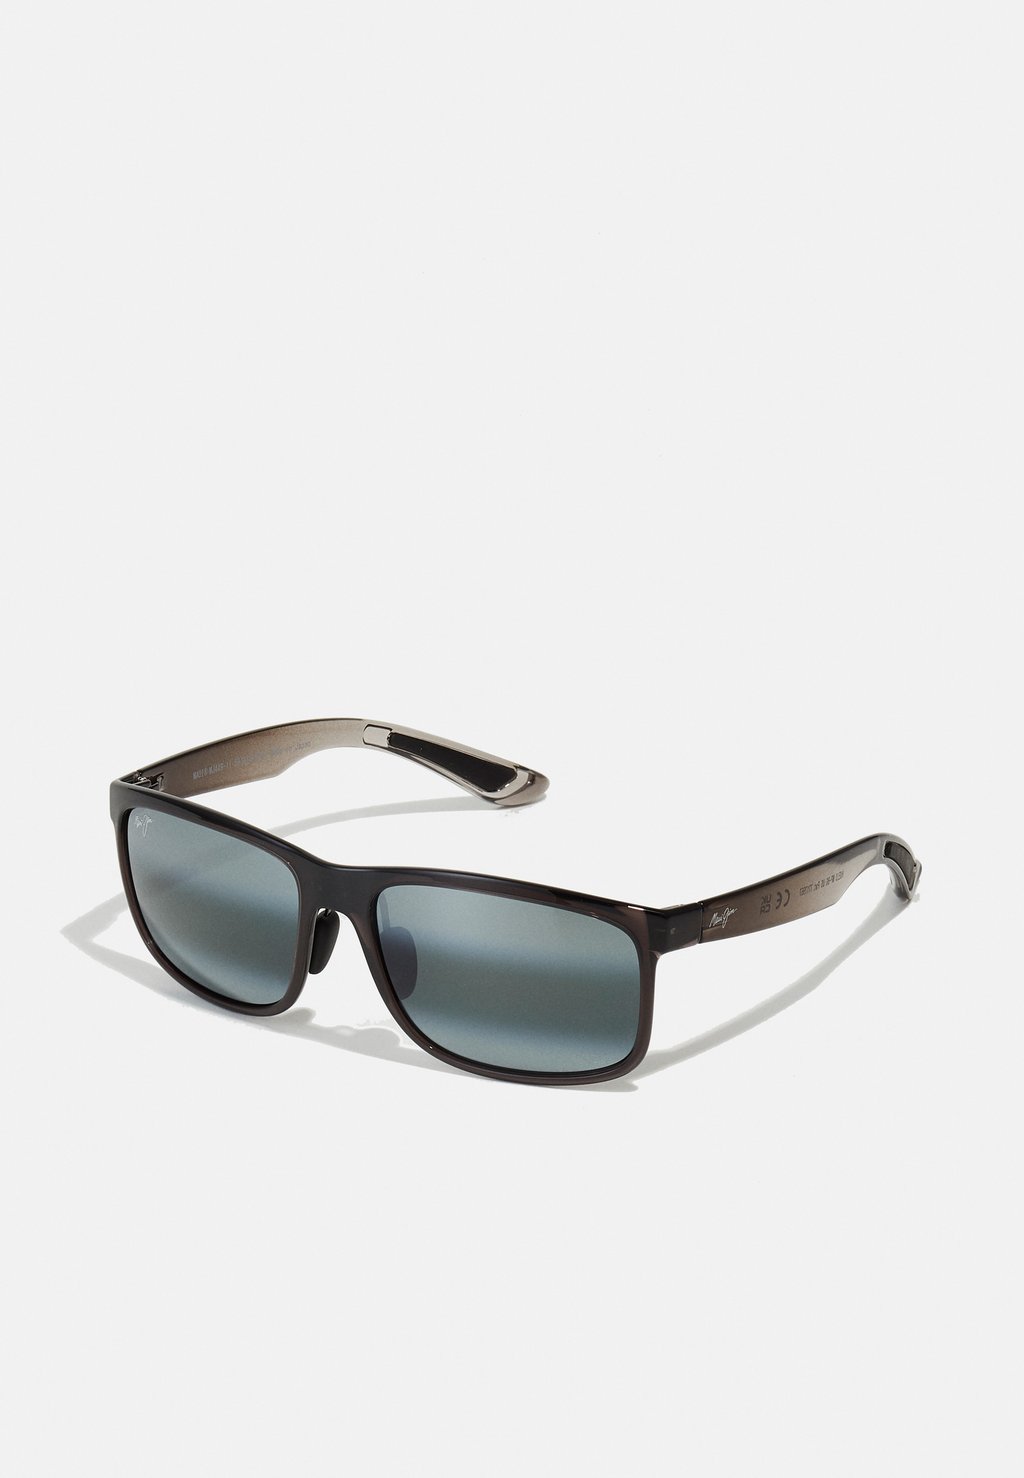 цена Солнцезащитные очки HUELO Maui Jim, цвет translucent grey